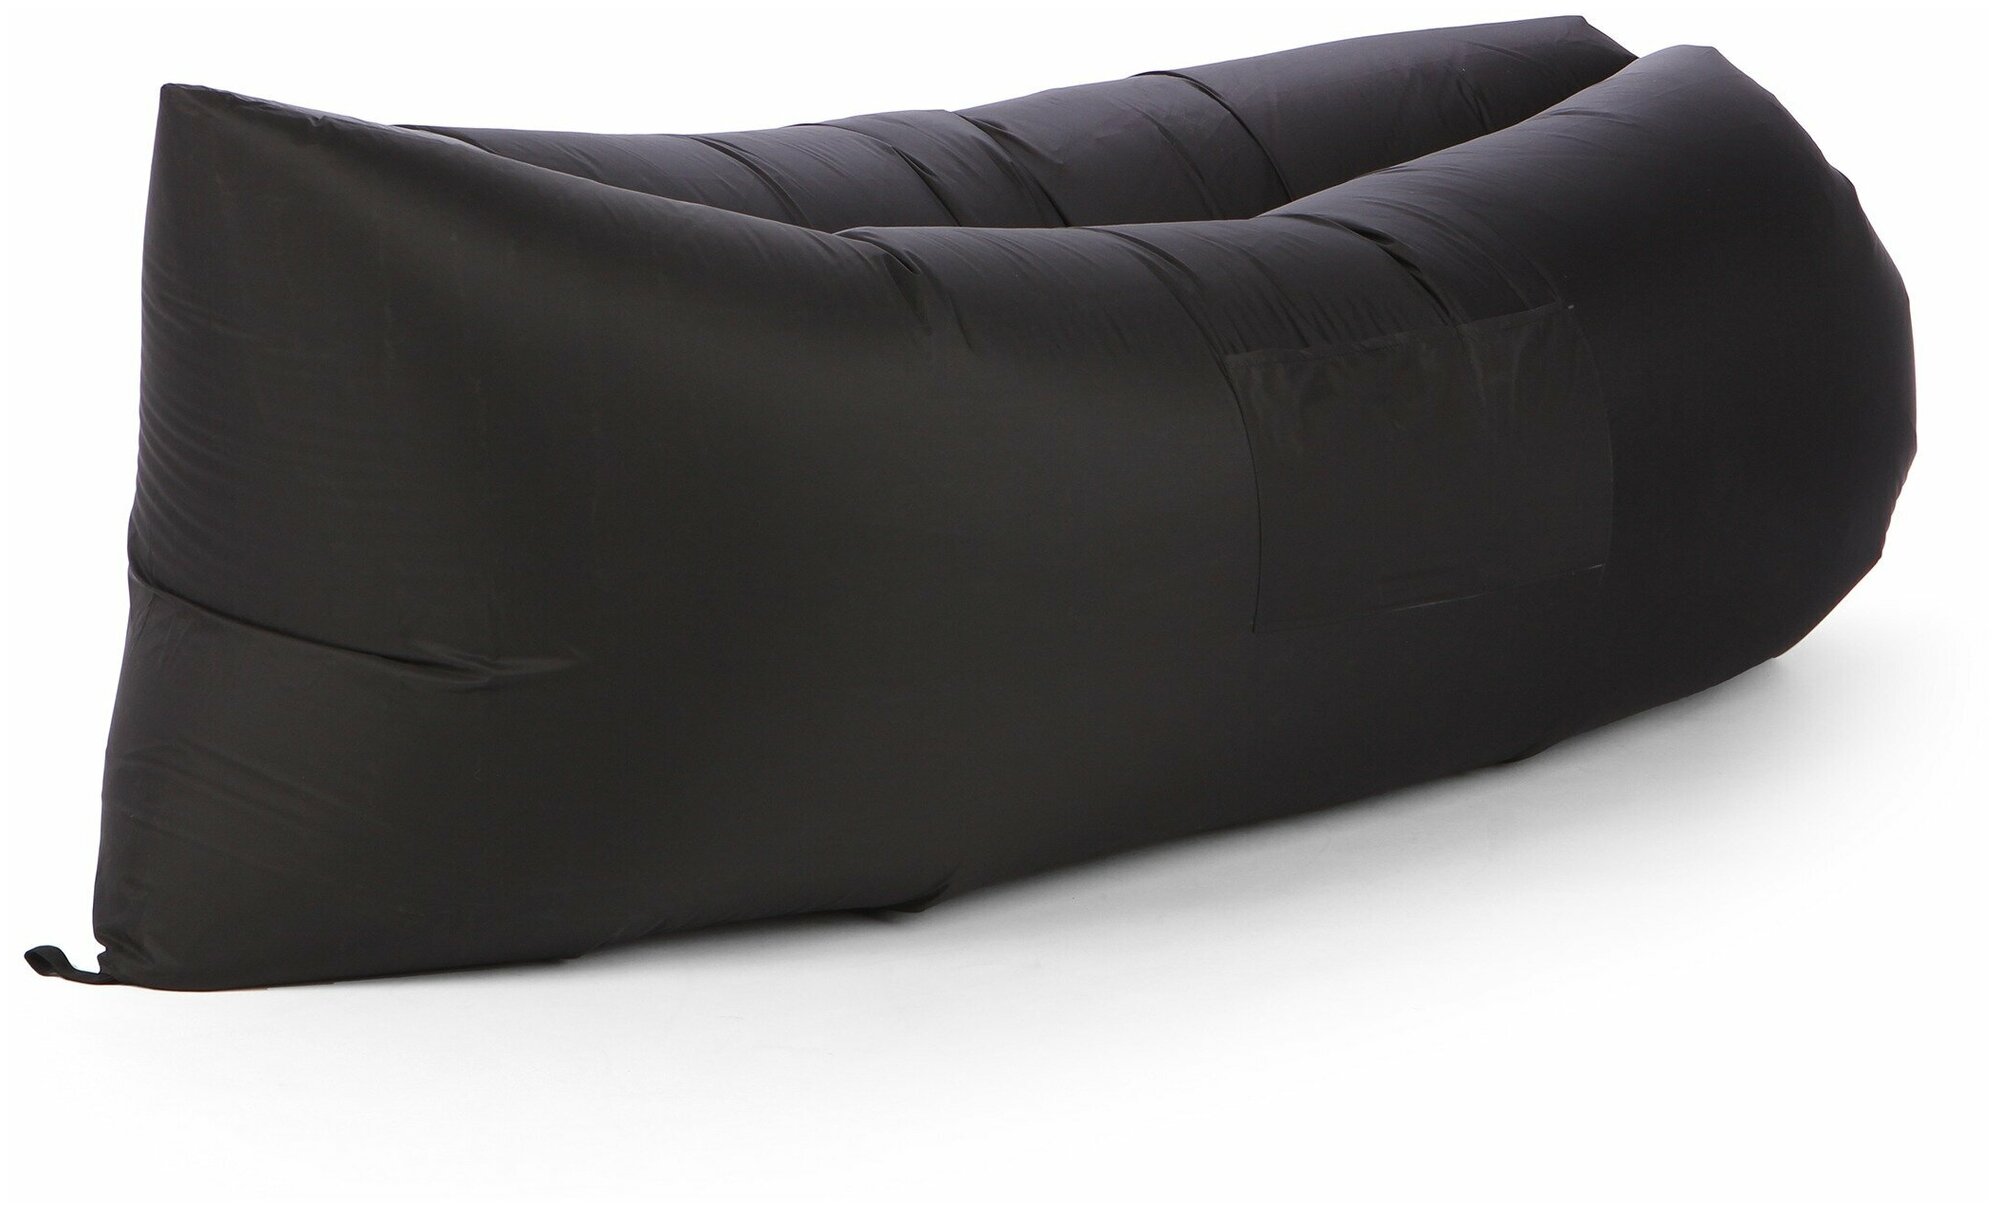 Надувной диван-лежак (черный)